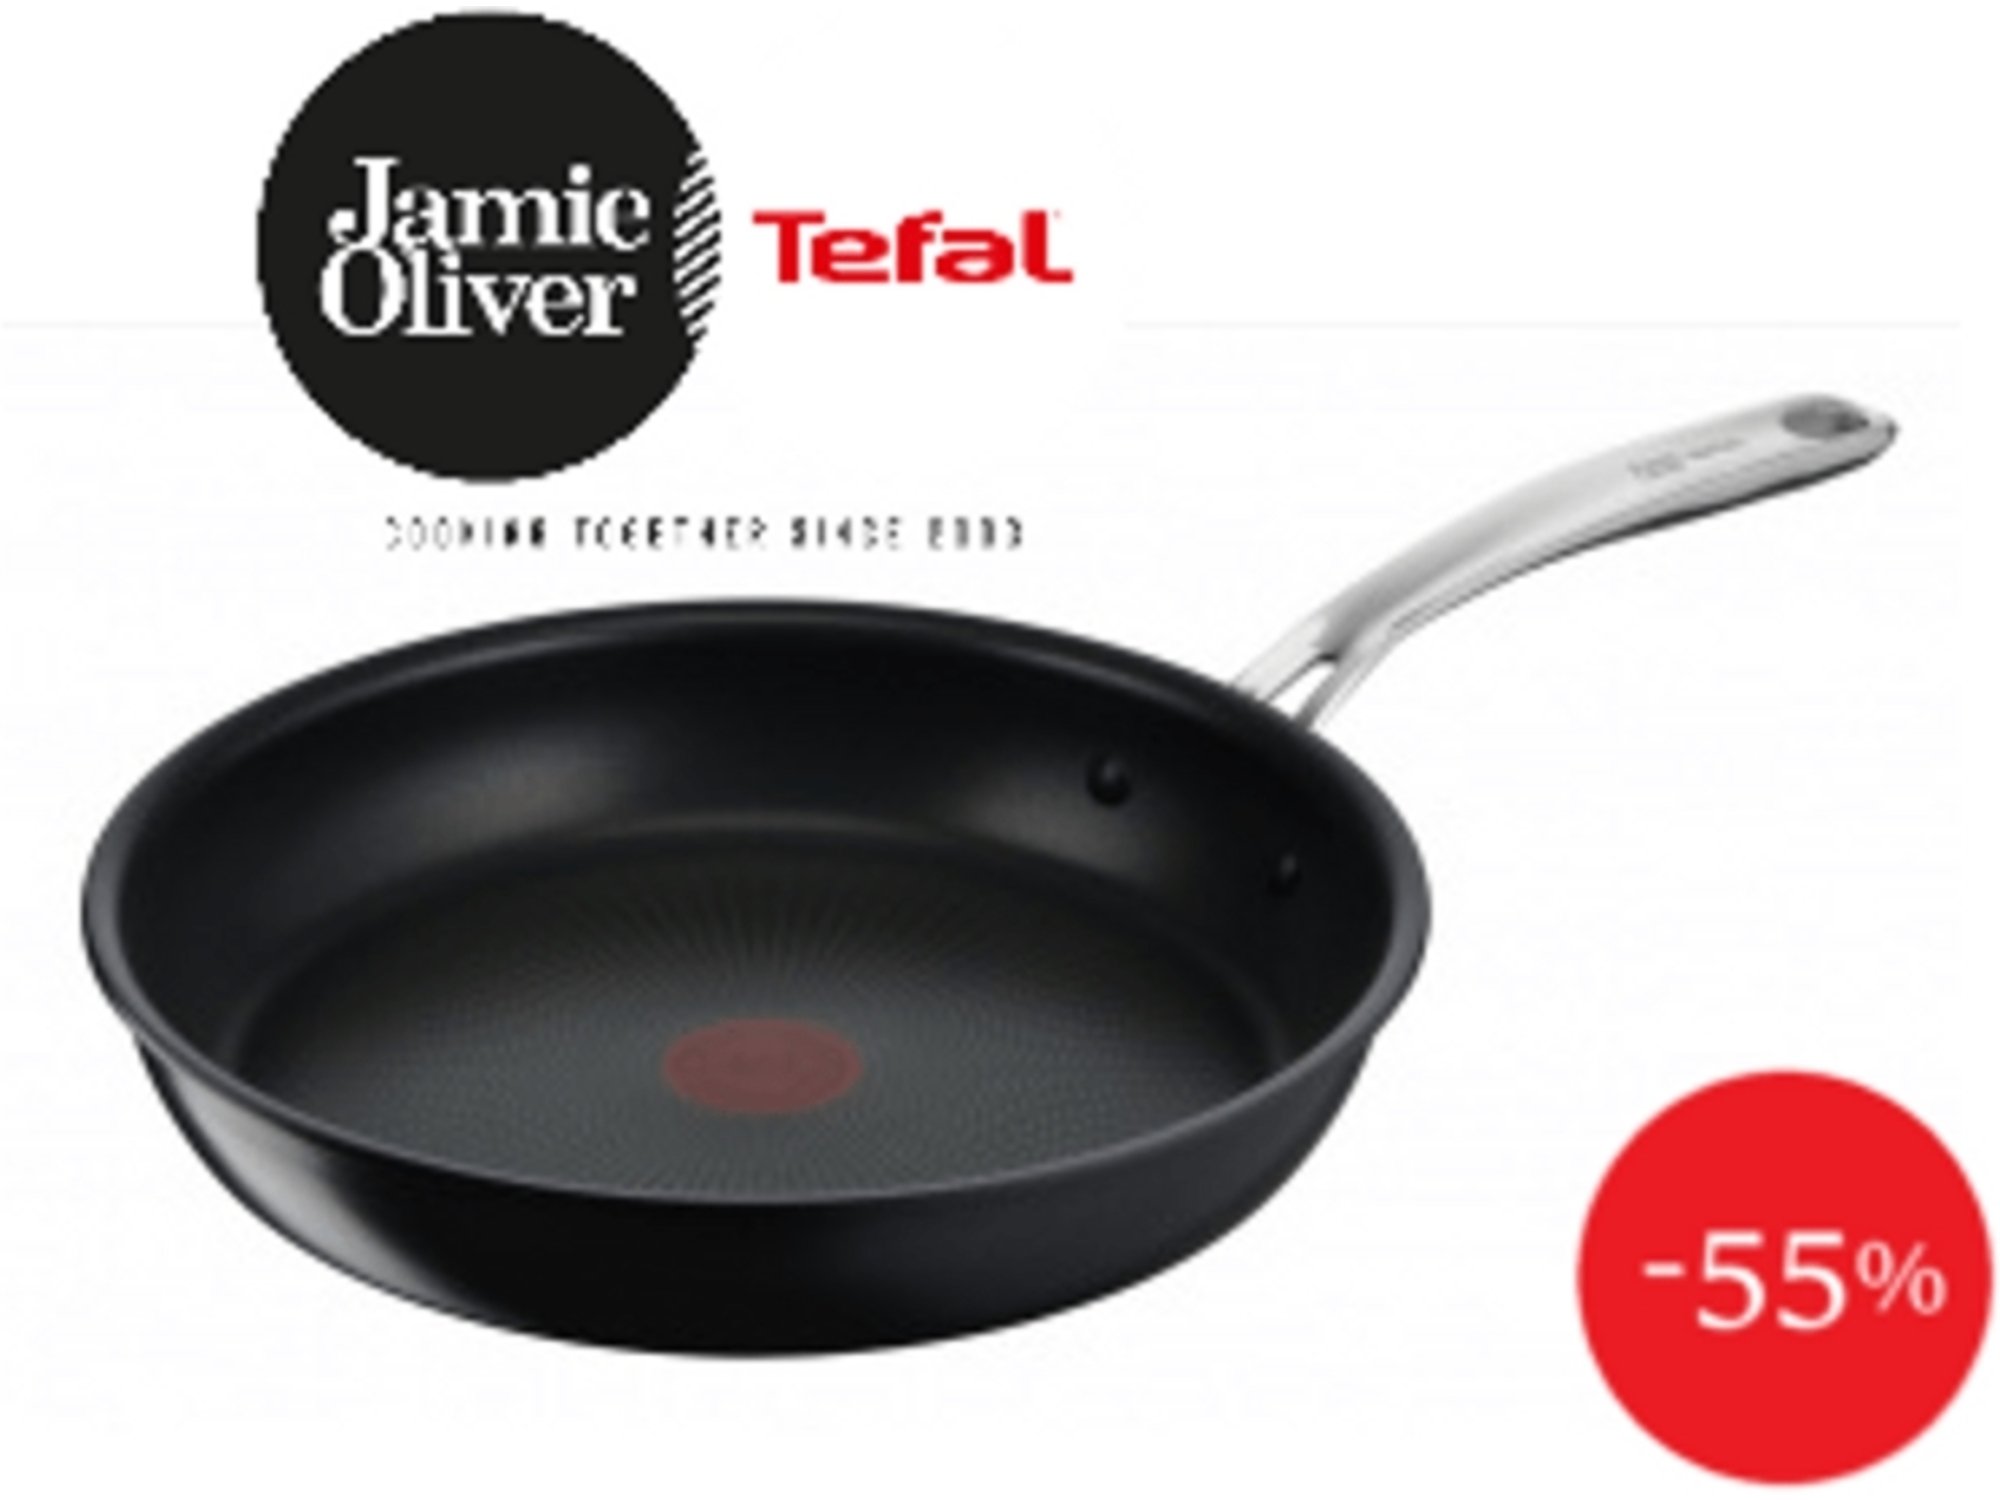 TEFAL Jamie Oliver ponev 28 cm E0140655